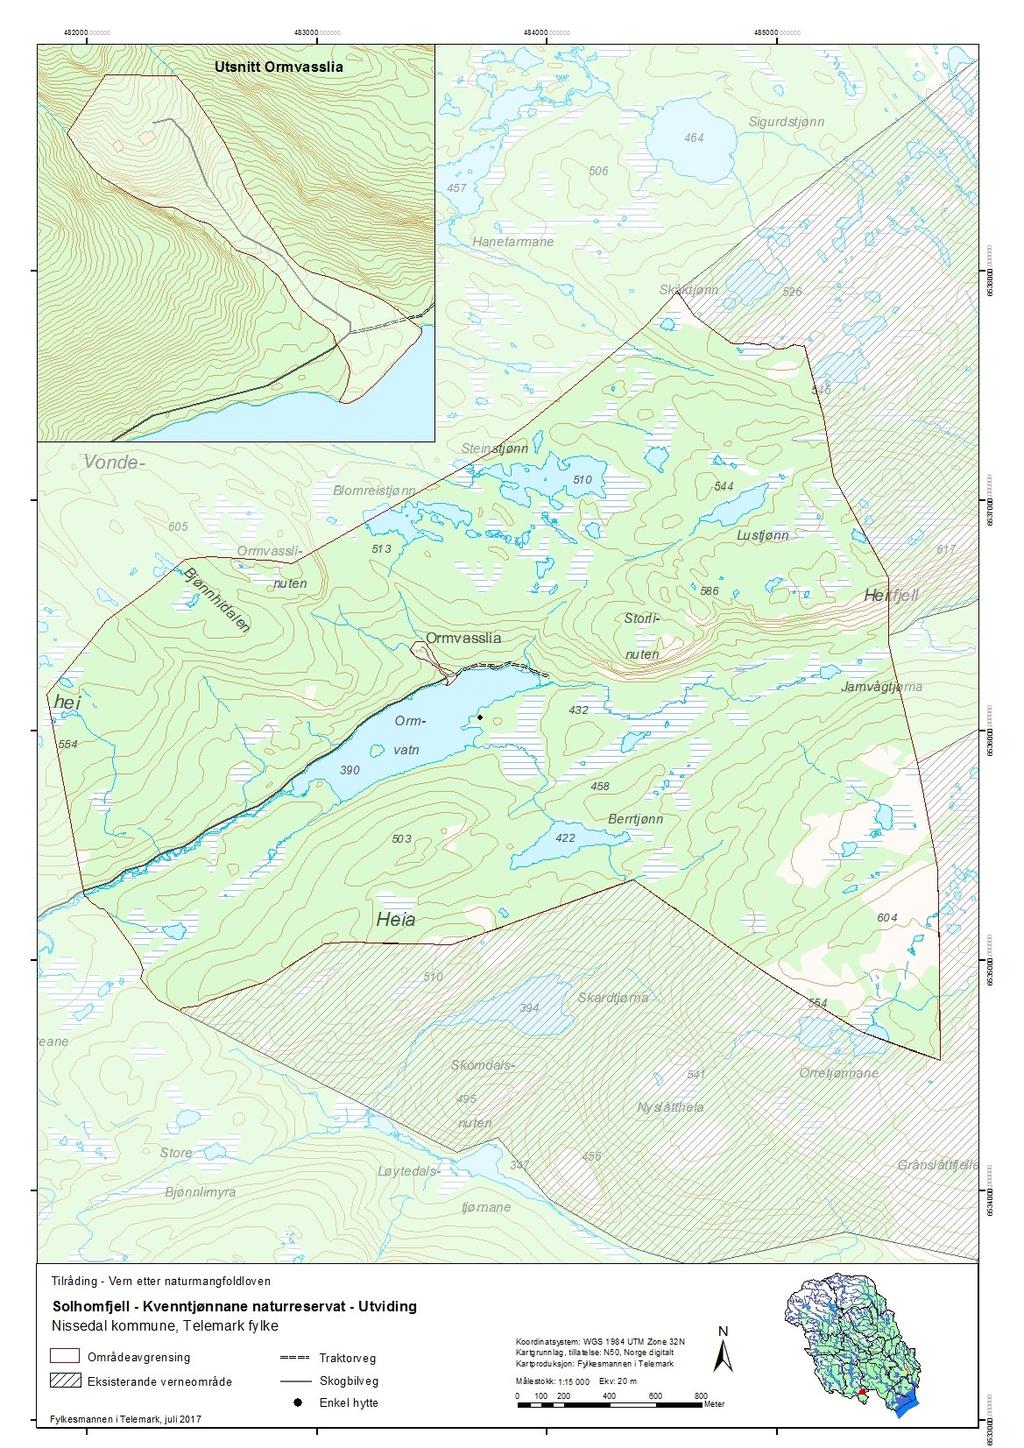 Vedlegg 2 Kart over utvidinga av Solhomfjell-Kvenntjønnane